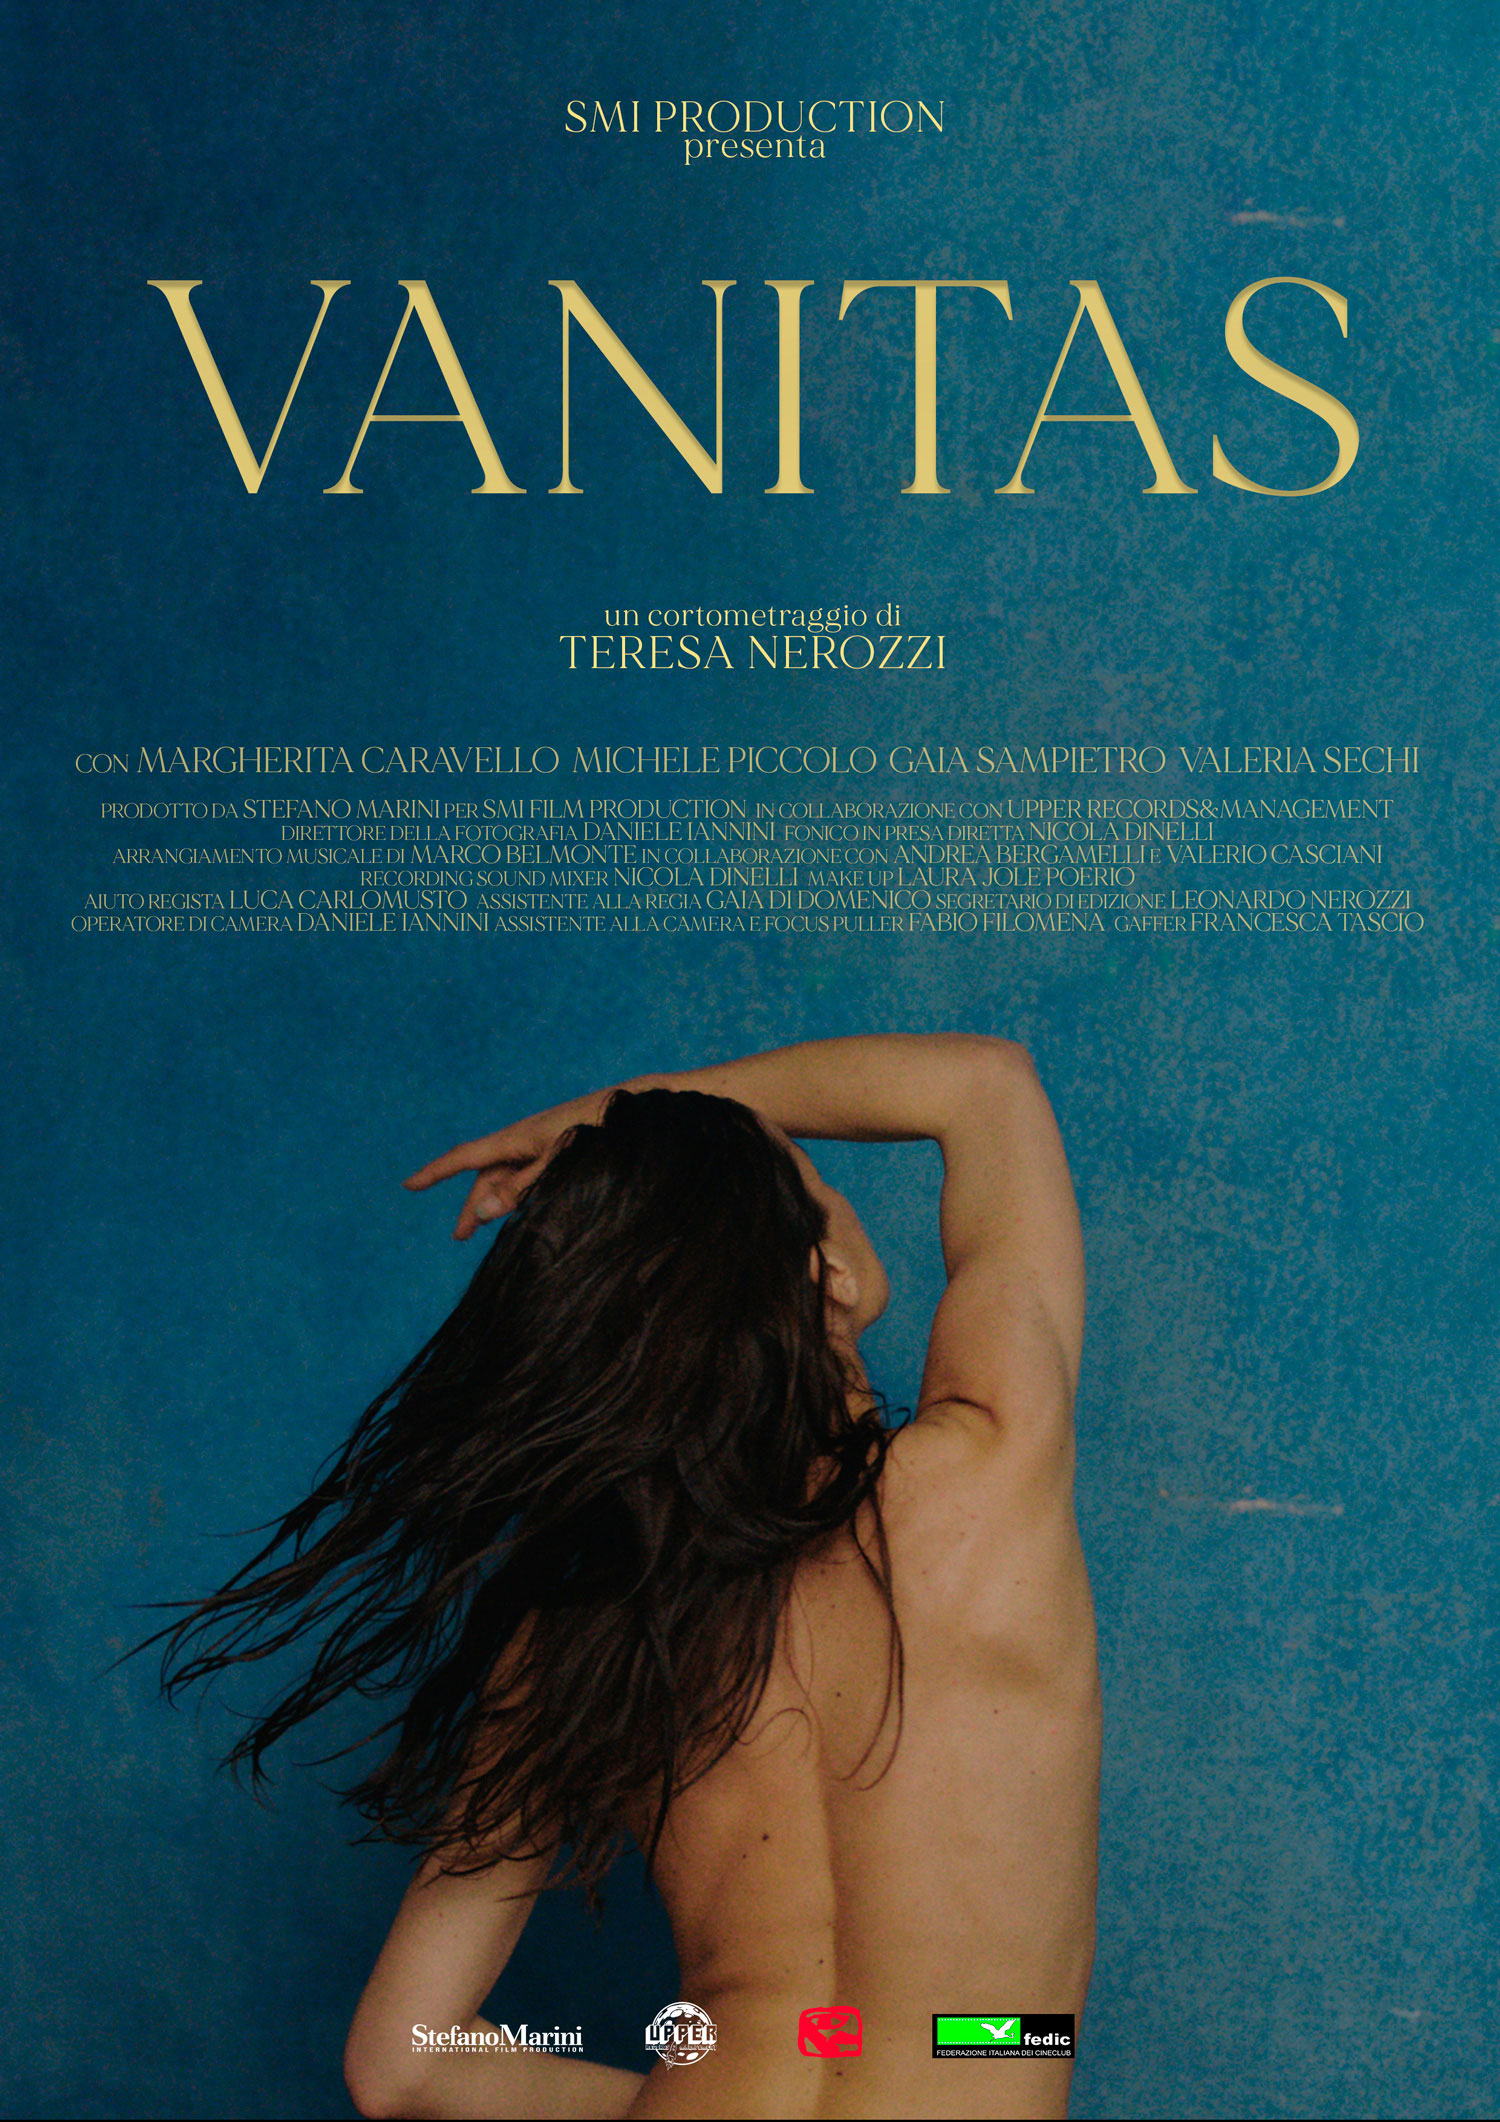 Poster of short film Vanitas, starring Italian grey hair model Valeria Sechi